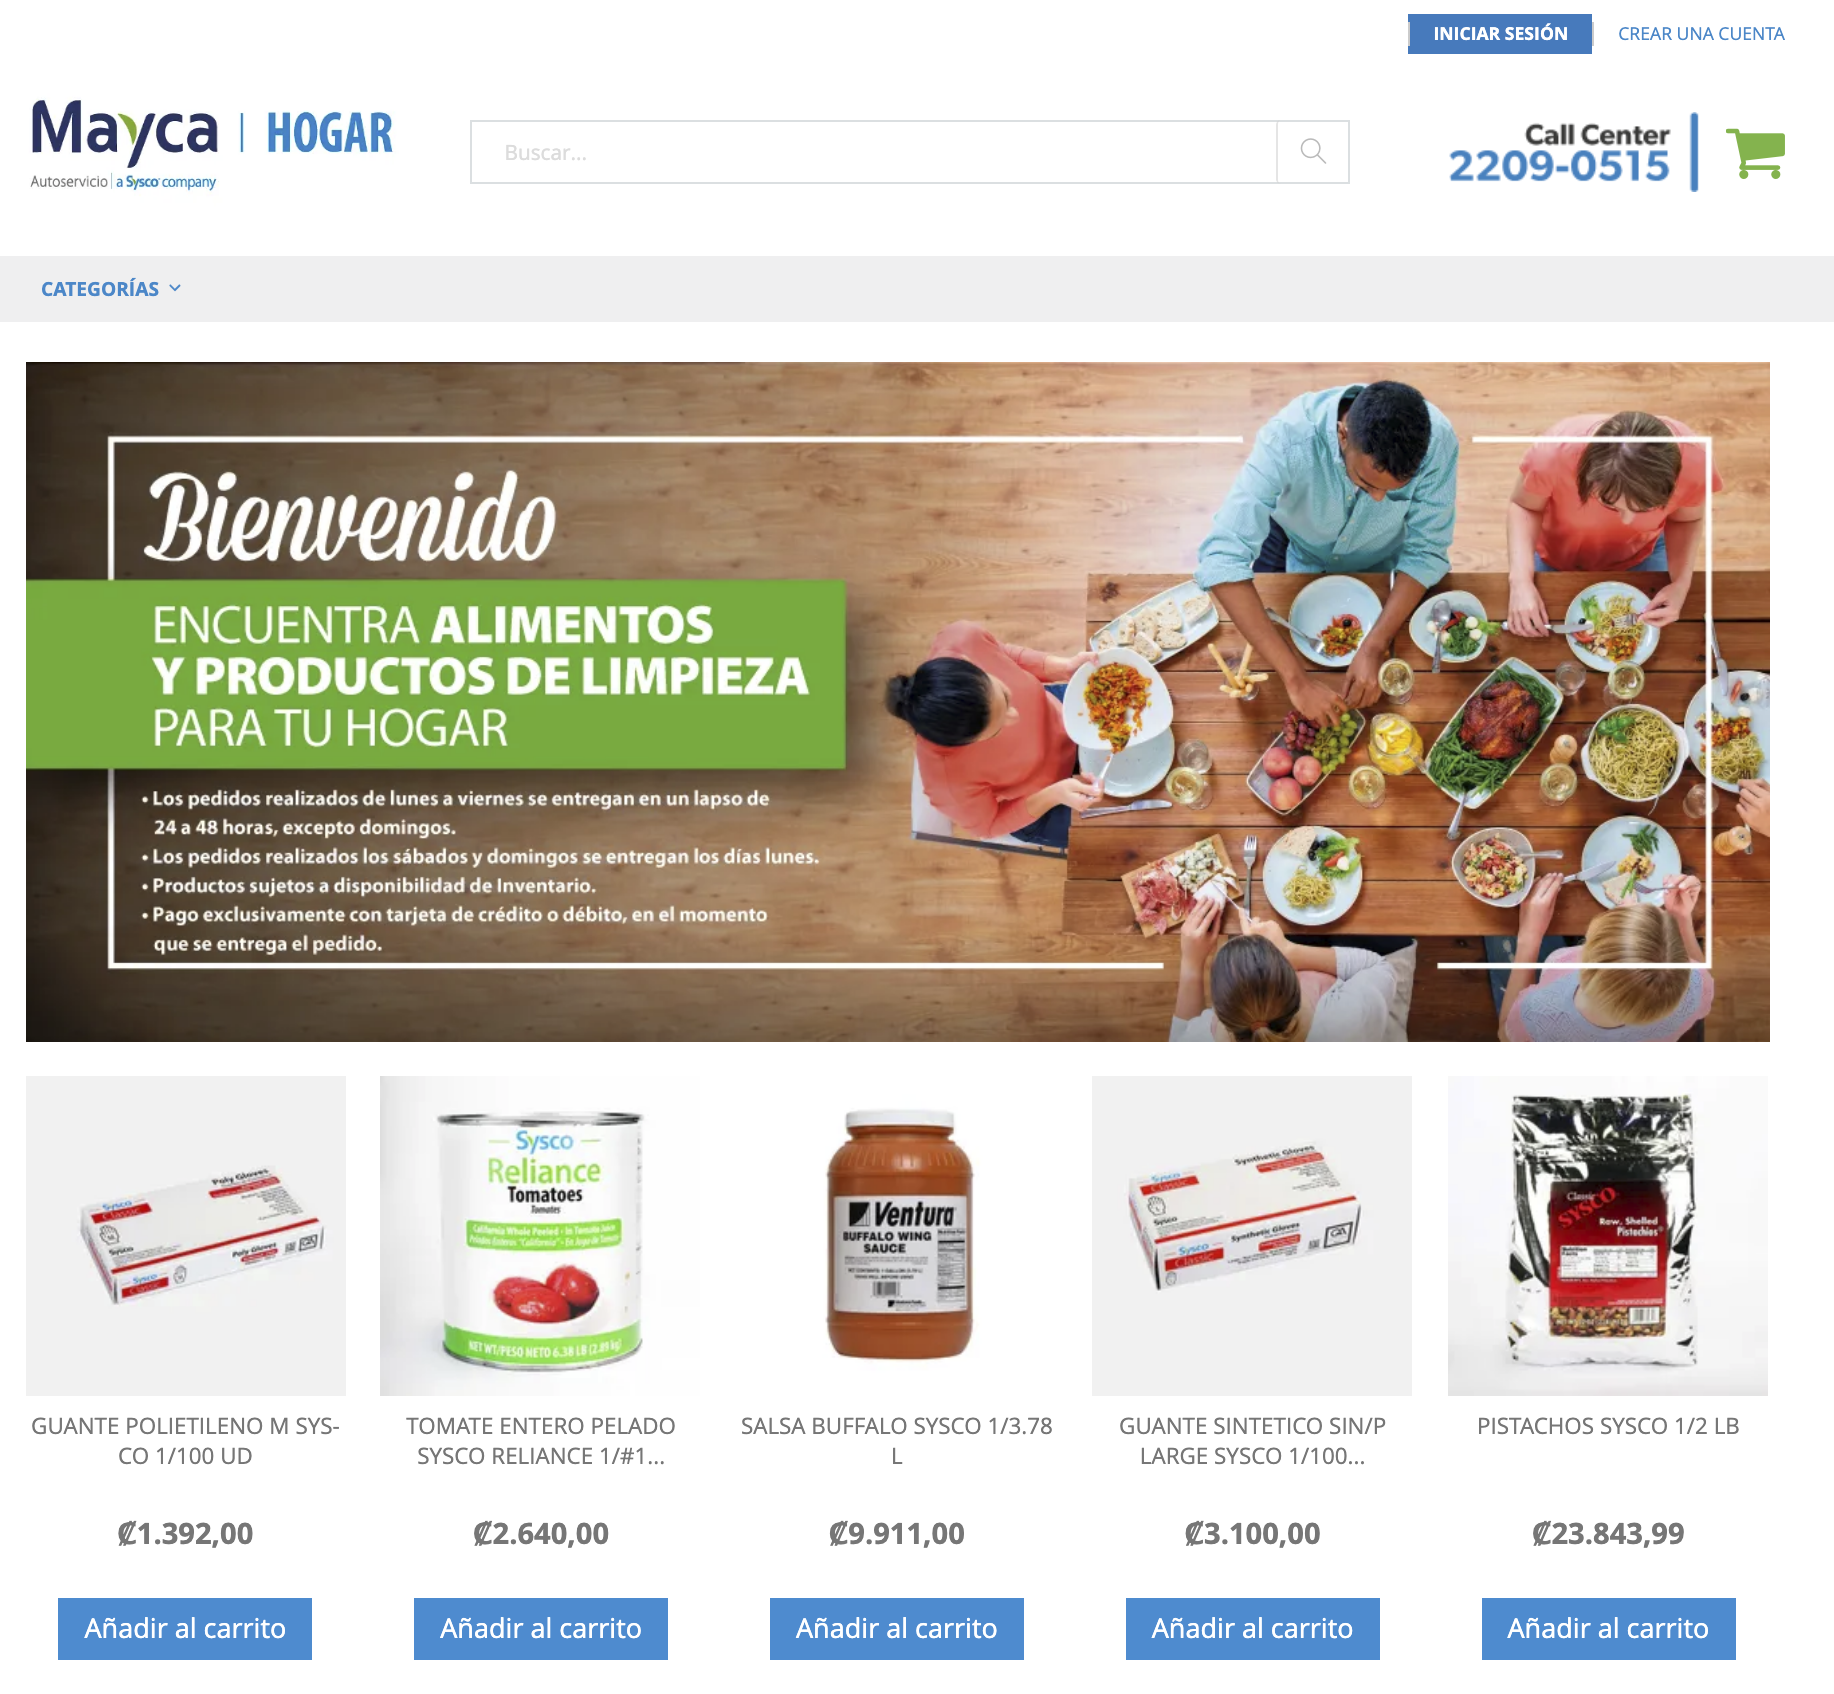 MAYCA Costa Rica lanza plataforma de compra en línea con más de 2.000 artículos